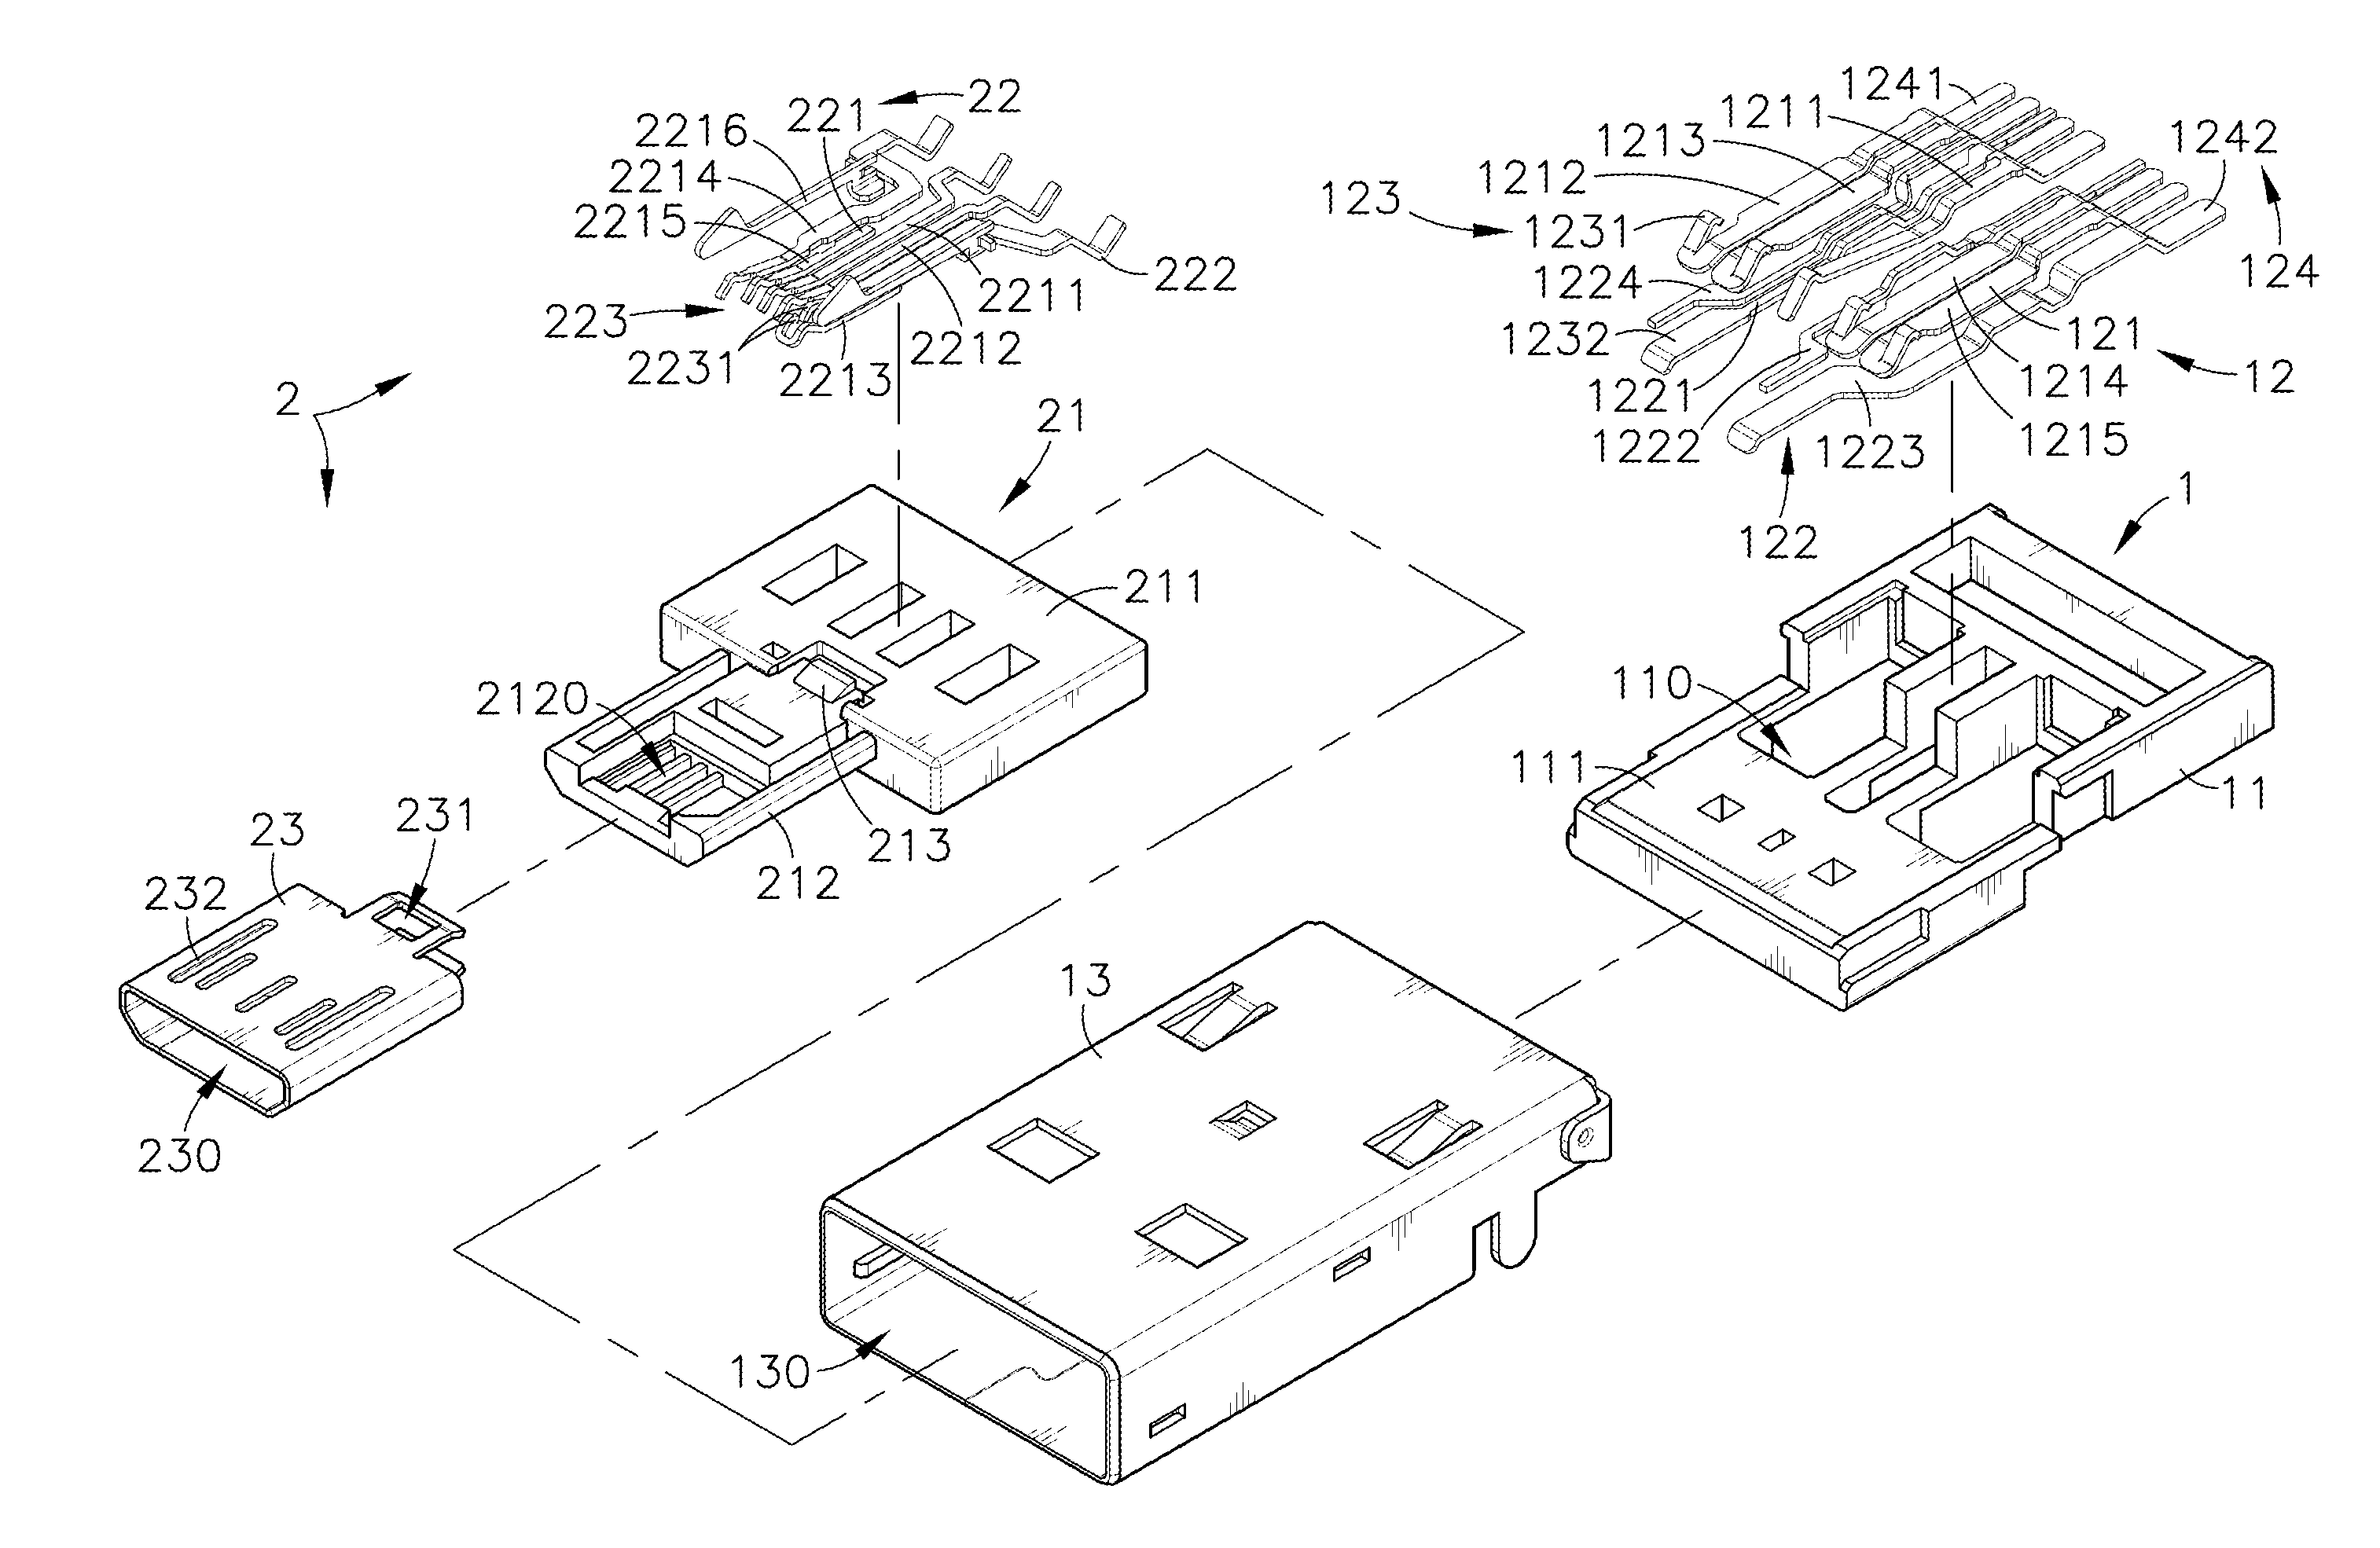 Usb/mini USB convertible connector